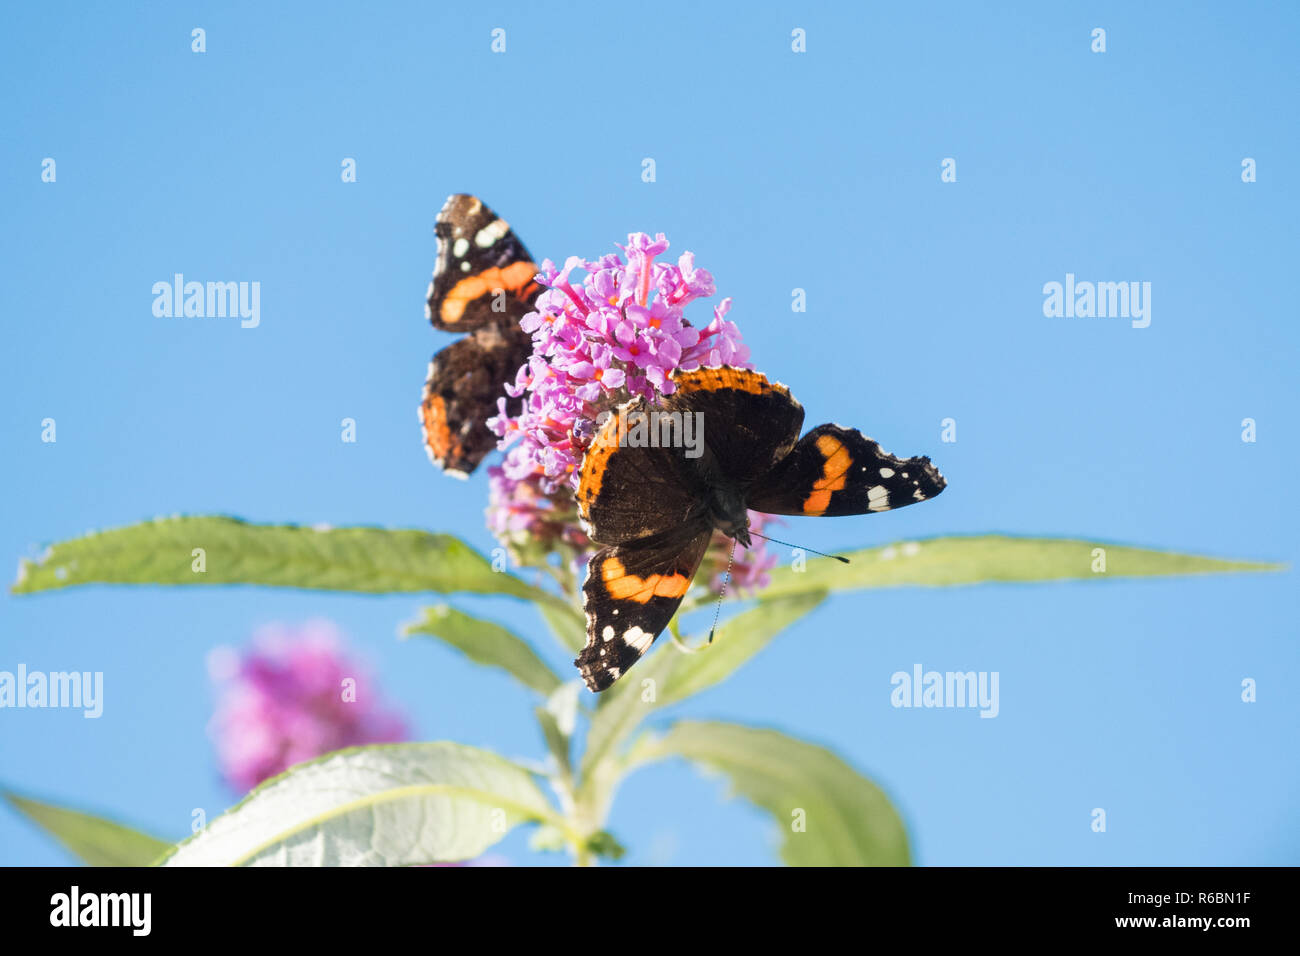 Red Admiral Schmetterling oder Vanessa atalanta Schmetterlinge auf sommerflieder oder Schmetterling Bush gegen den blauen Himmel mit copy Space - Schottland, Großbritannien Stockfoto